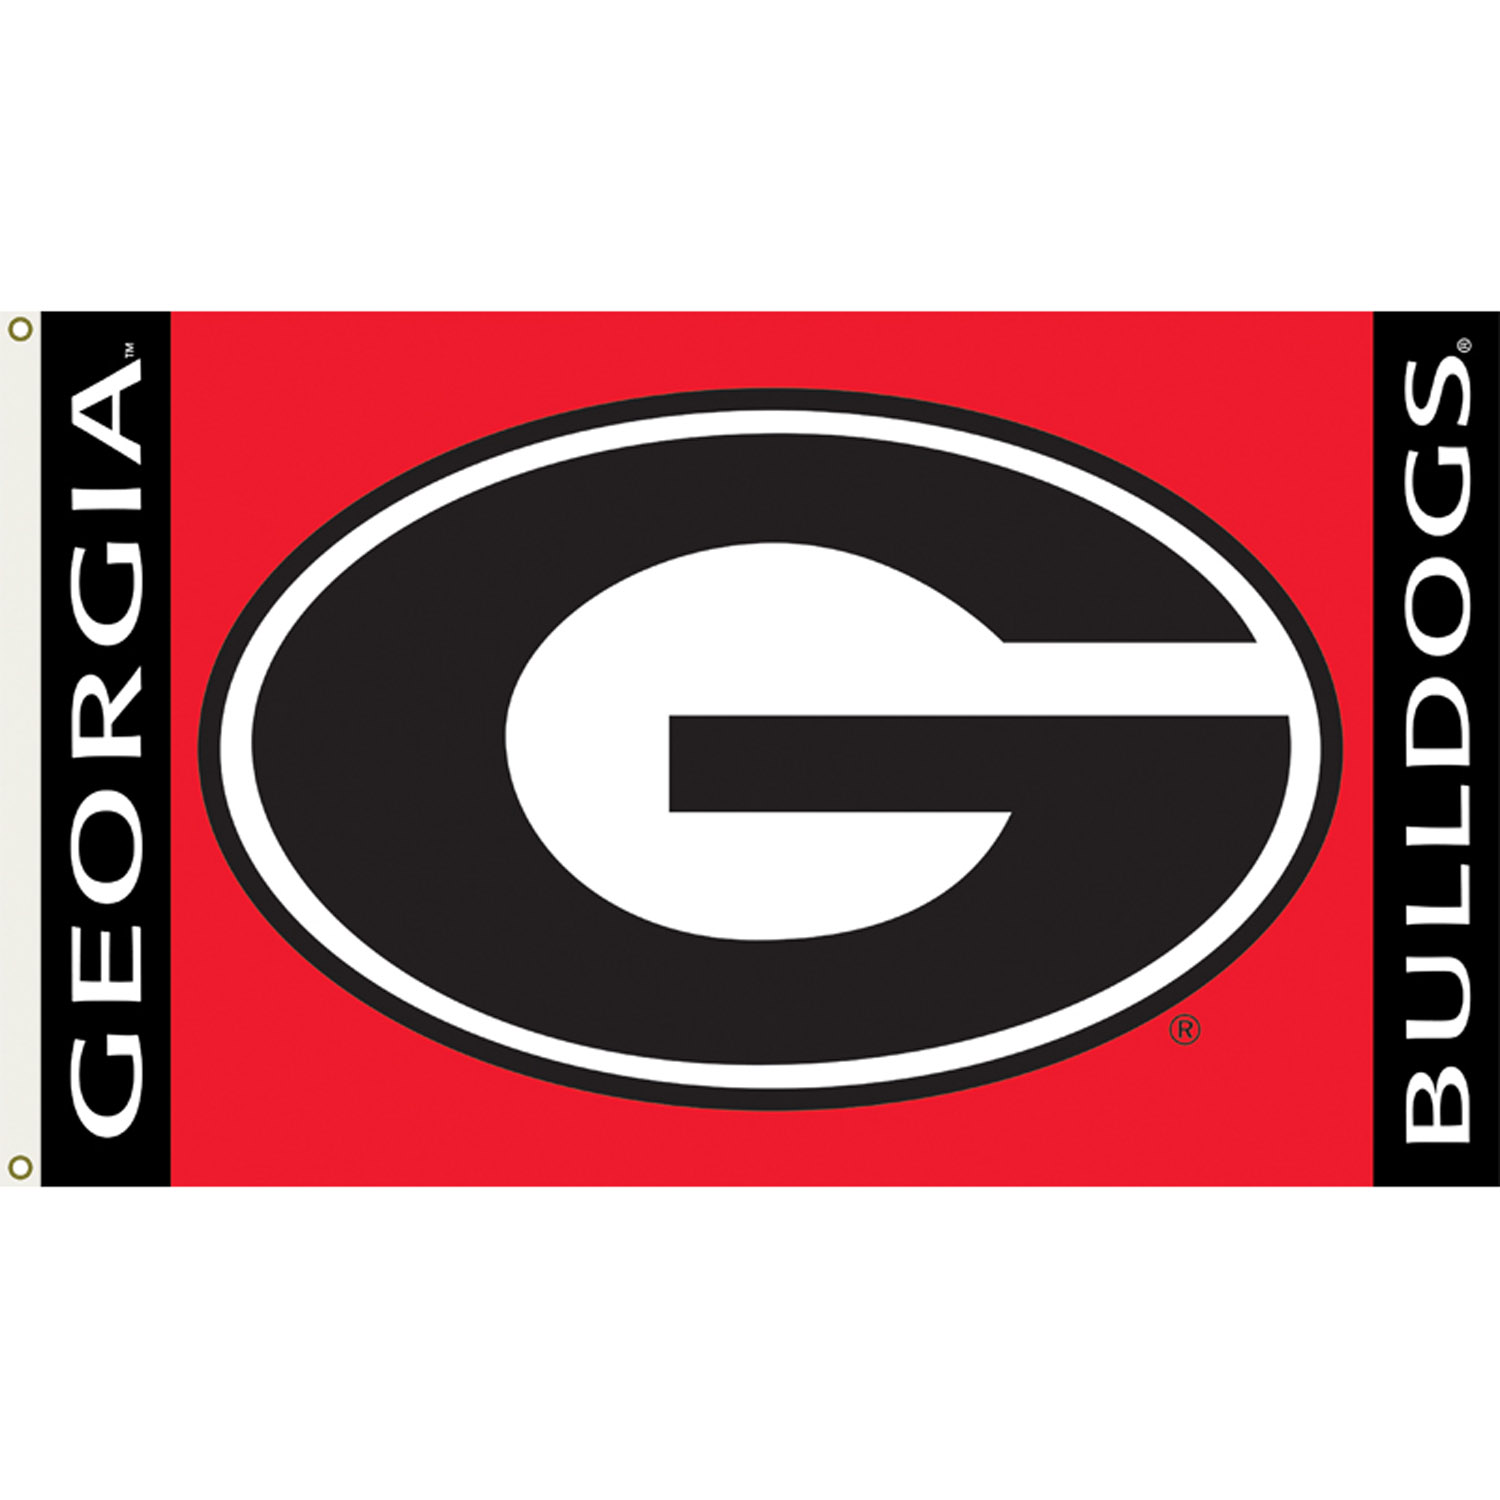 Georgia Bulldogs Camo Wallpaper Georgia bulldogs logo camo